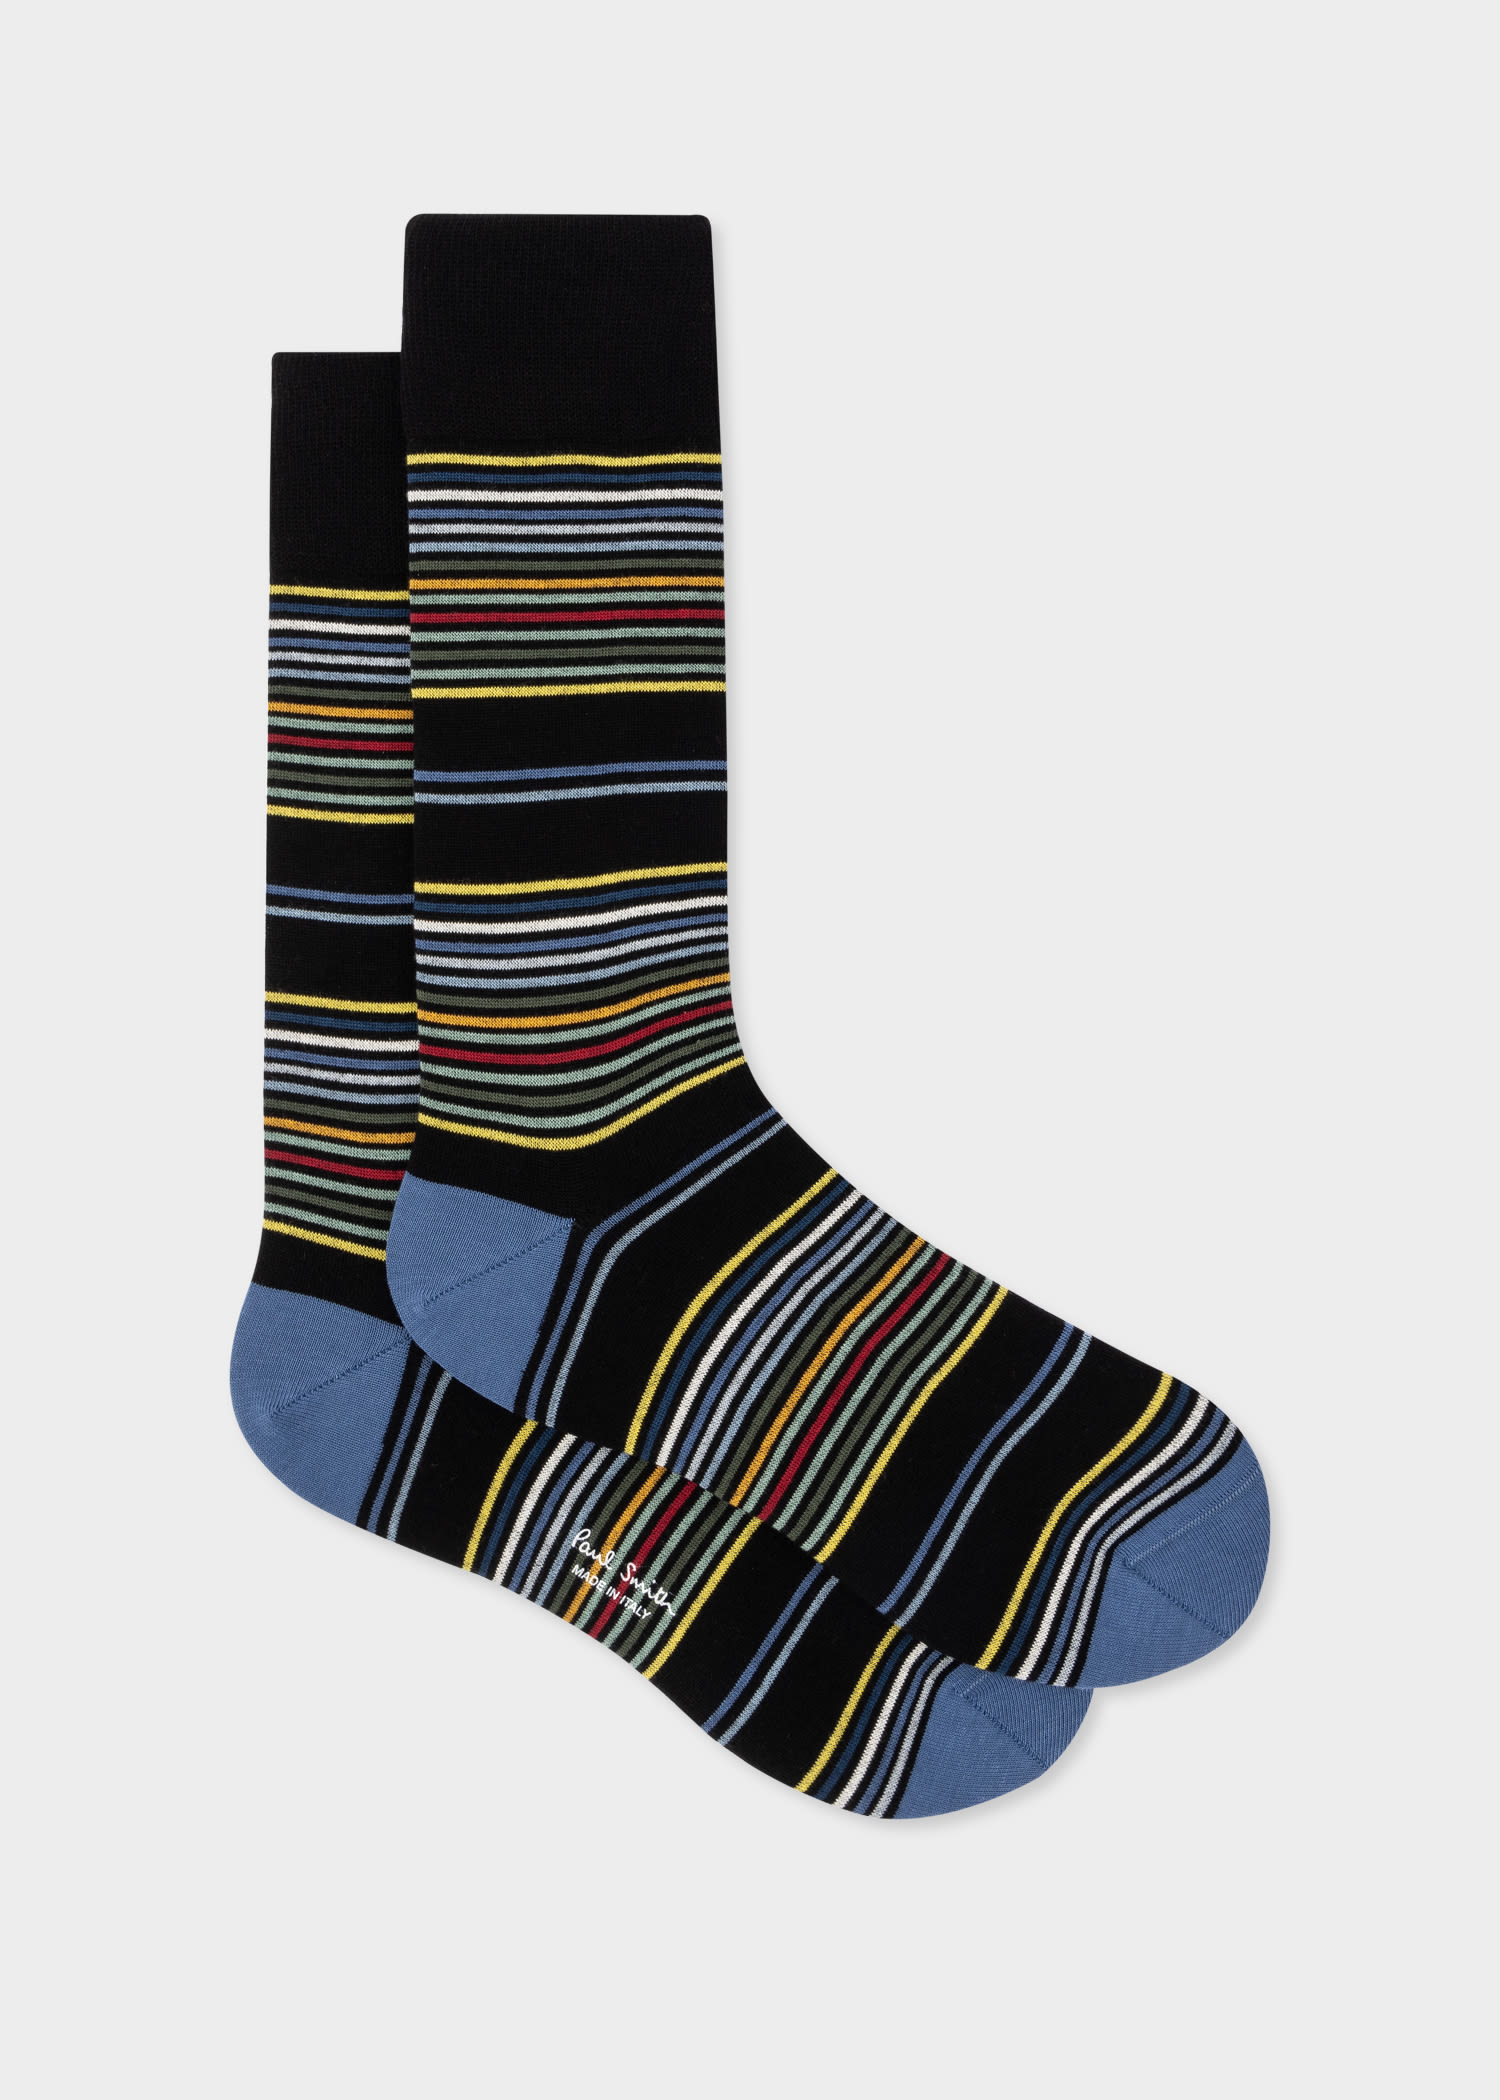 Men's Black and Blue Multi-Stripe Socks